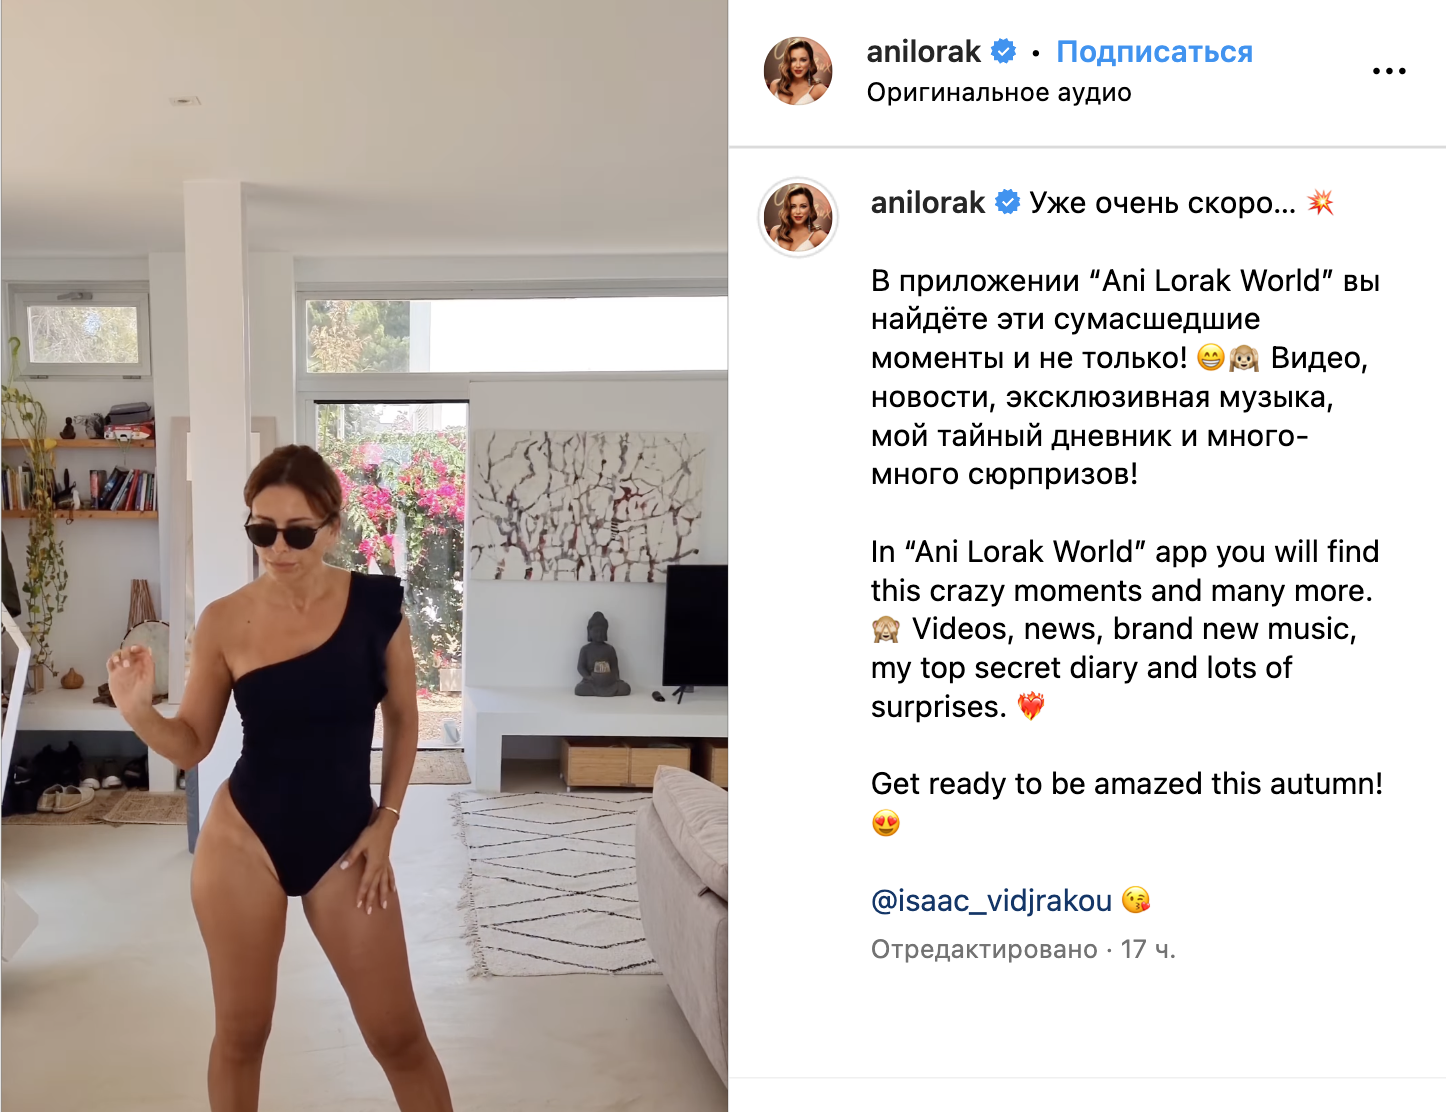 Ани Лорак опозорилась "сумасшедшим" танцем в купальнике с бойфрендом и анонсировала приложение со своим "тайным дневником" 